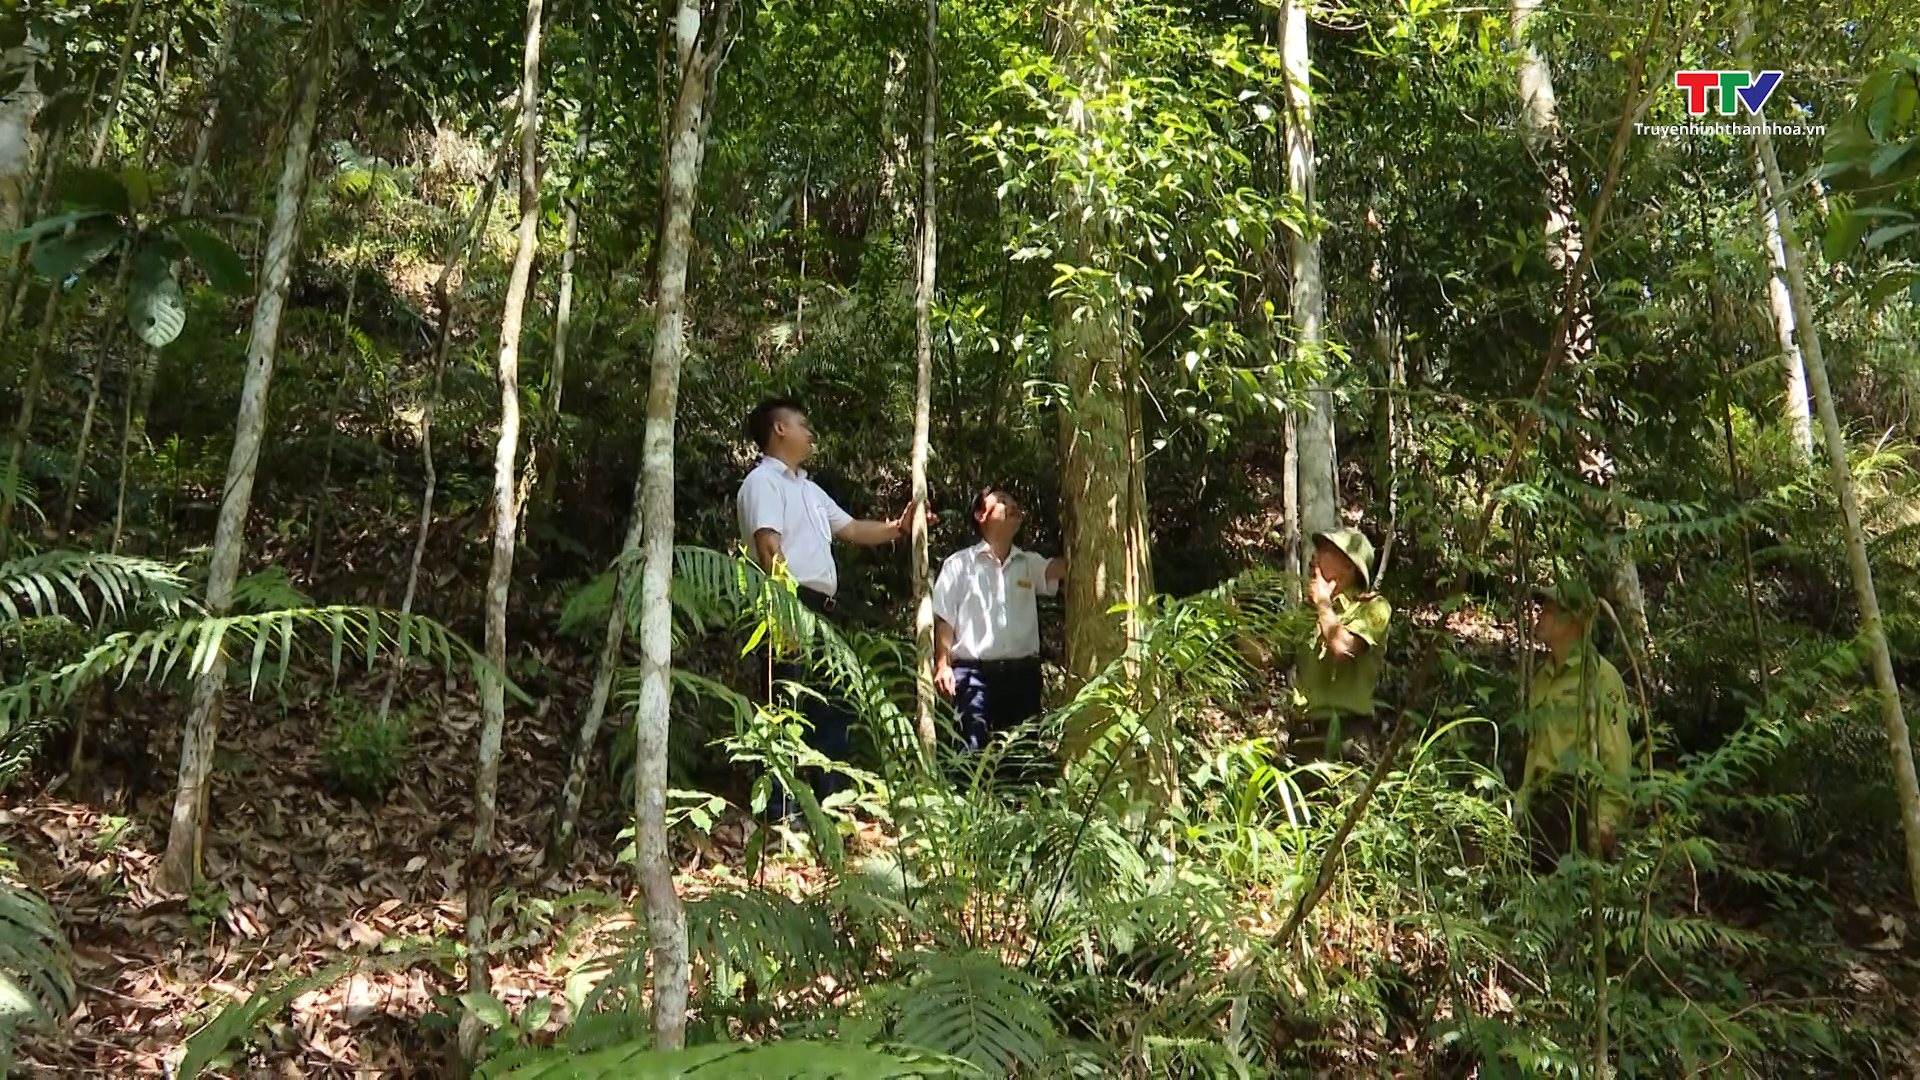 Nâng cao vai trò cấp ủy, chính quyền cơ sở trong công tác bảo vệ rừng - Ảnh 6.